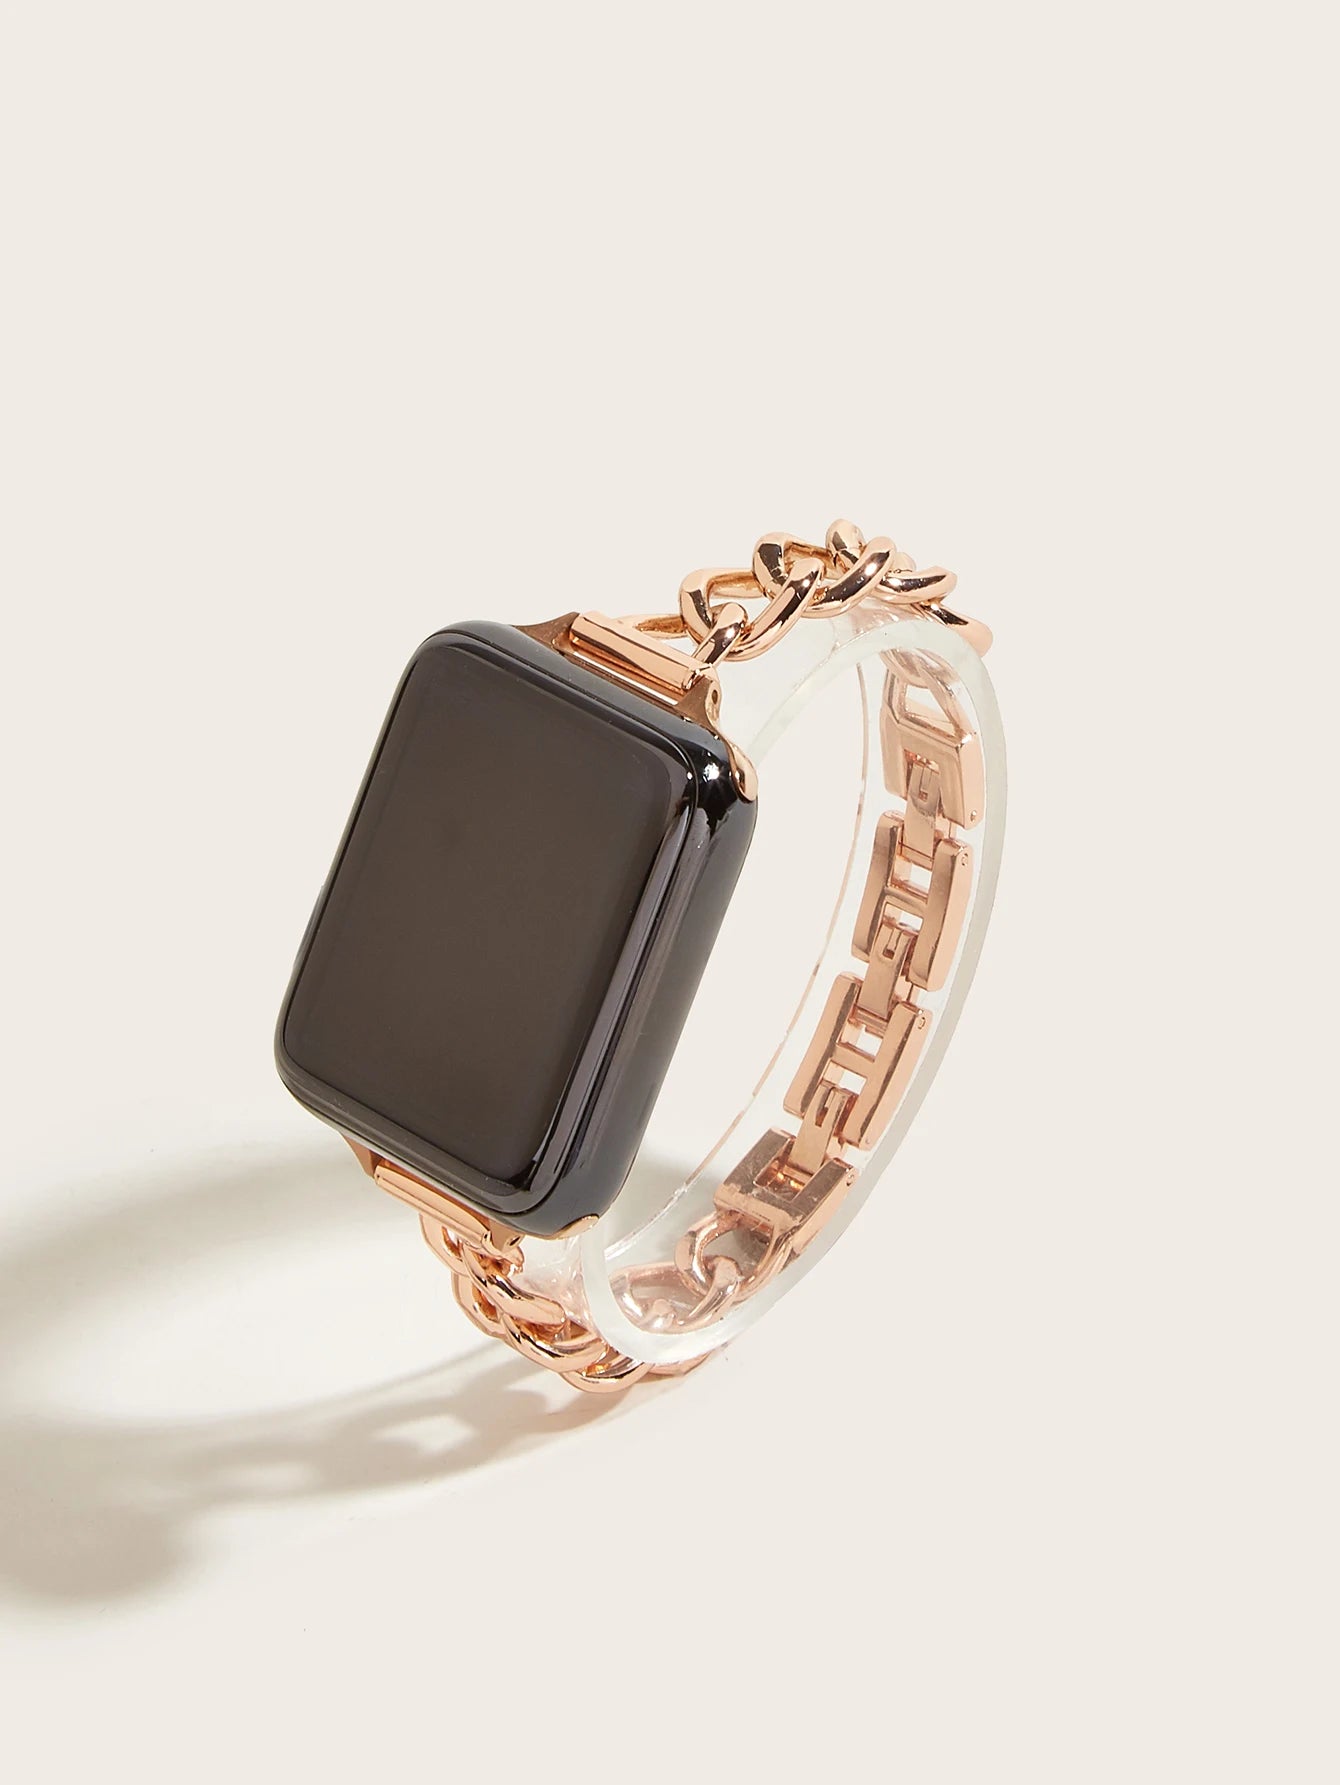 10802 B01-12 Correa delgada de acero inoxidable para Apple Watch